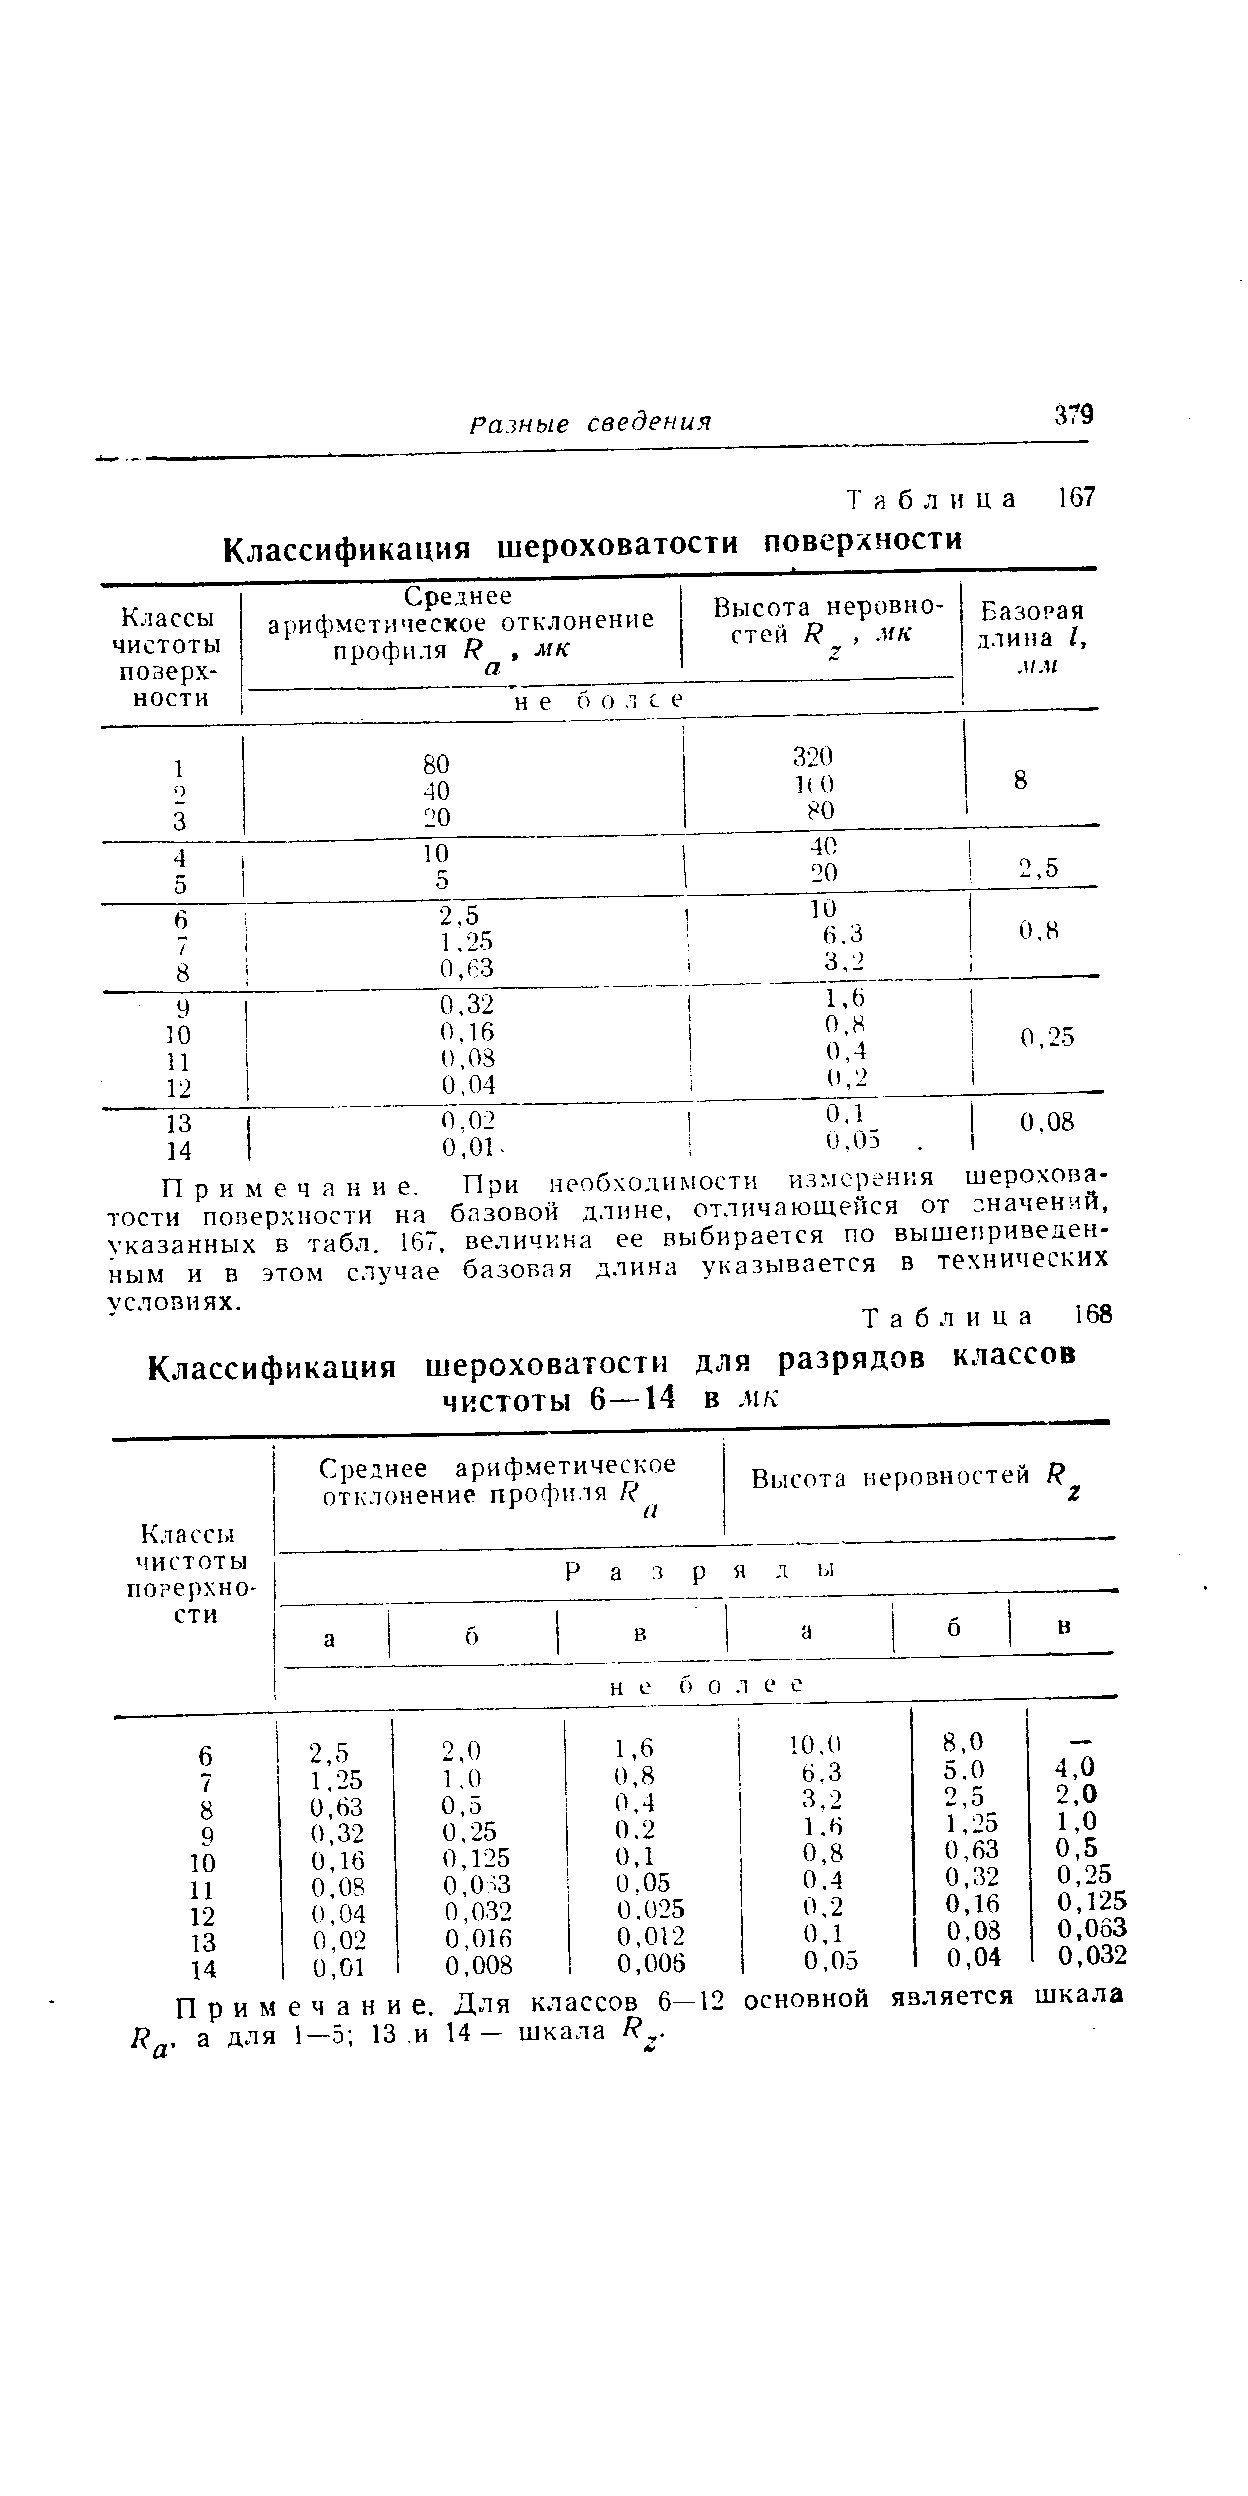 Таблица 168 Классификация шероховатости для разрядов классов чистоты 6—14 в мк
